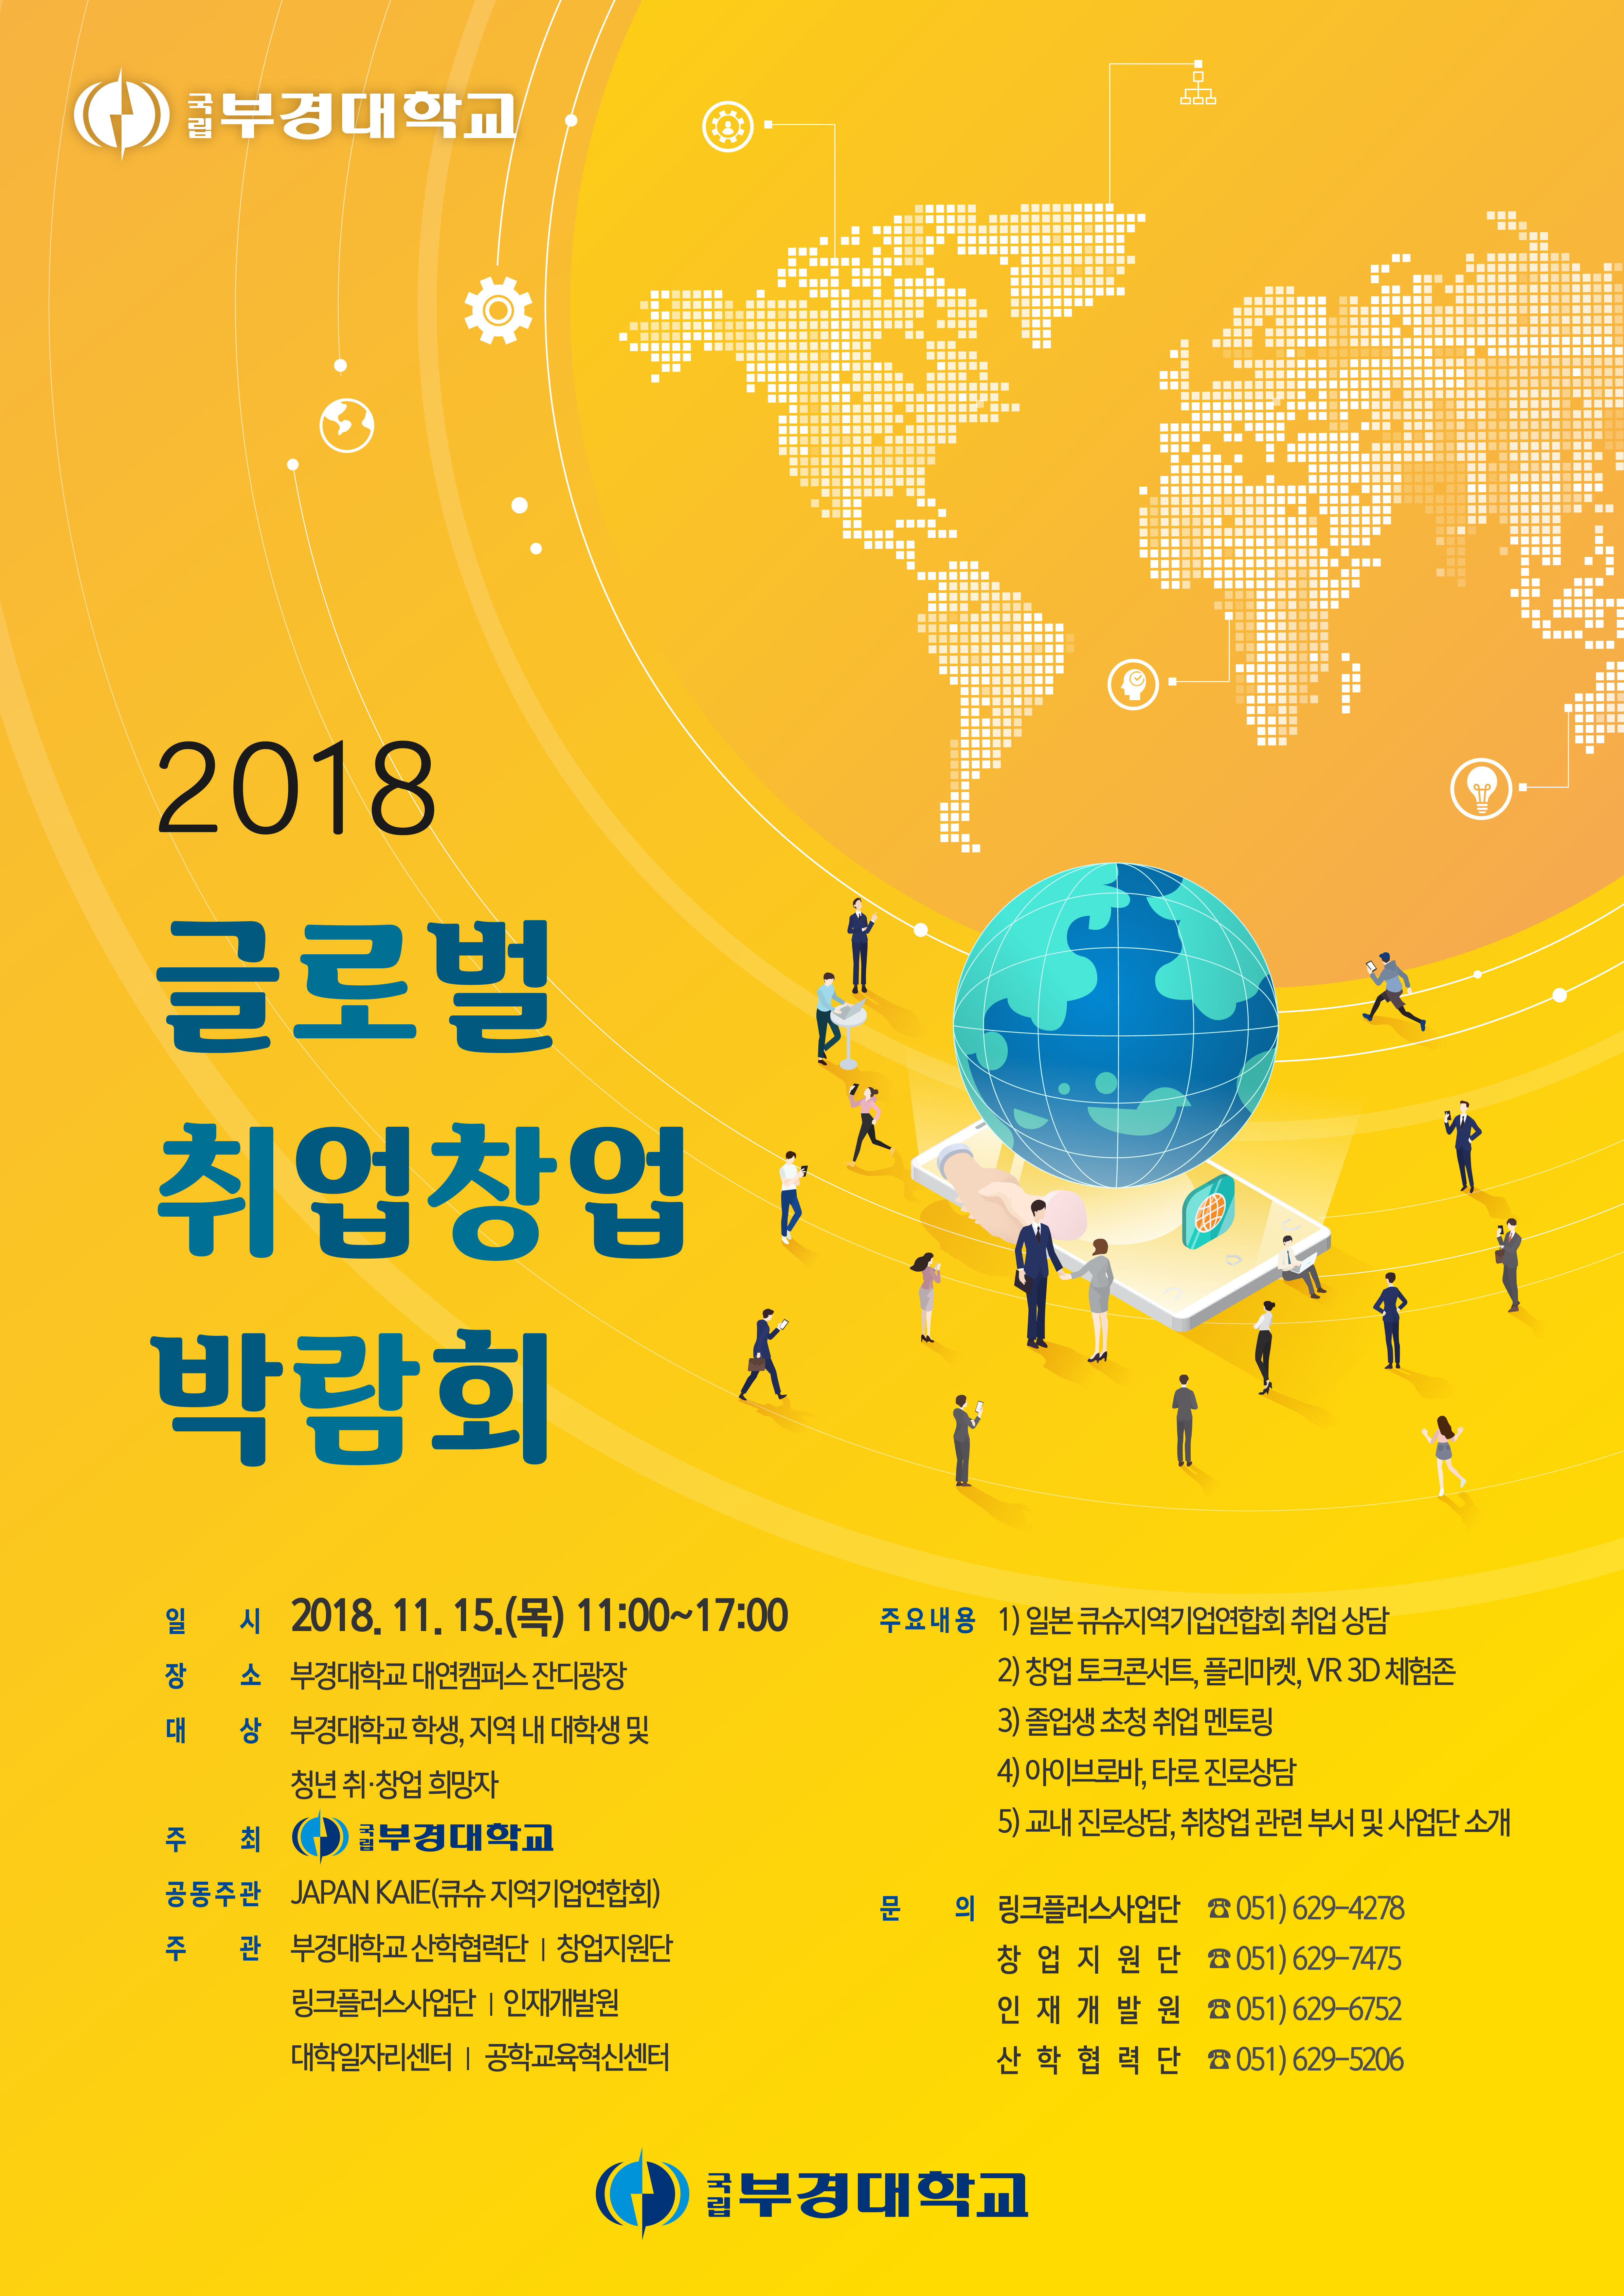 2018 글로벌 취업창업박람회 개최 알림0